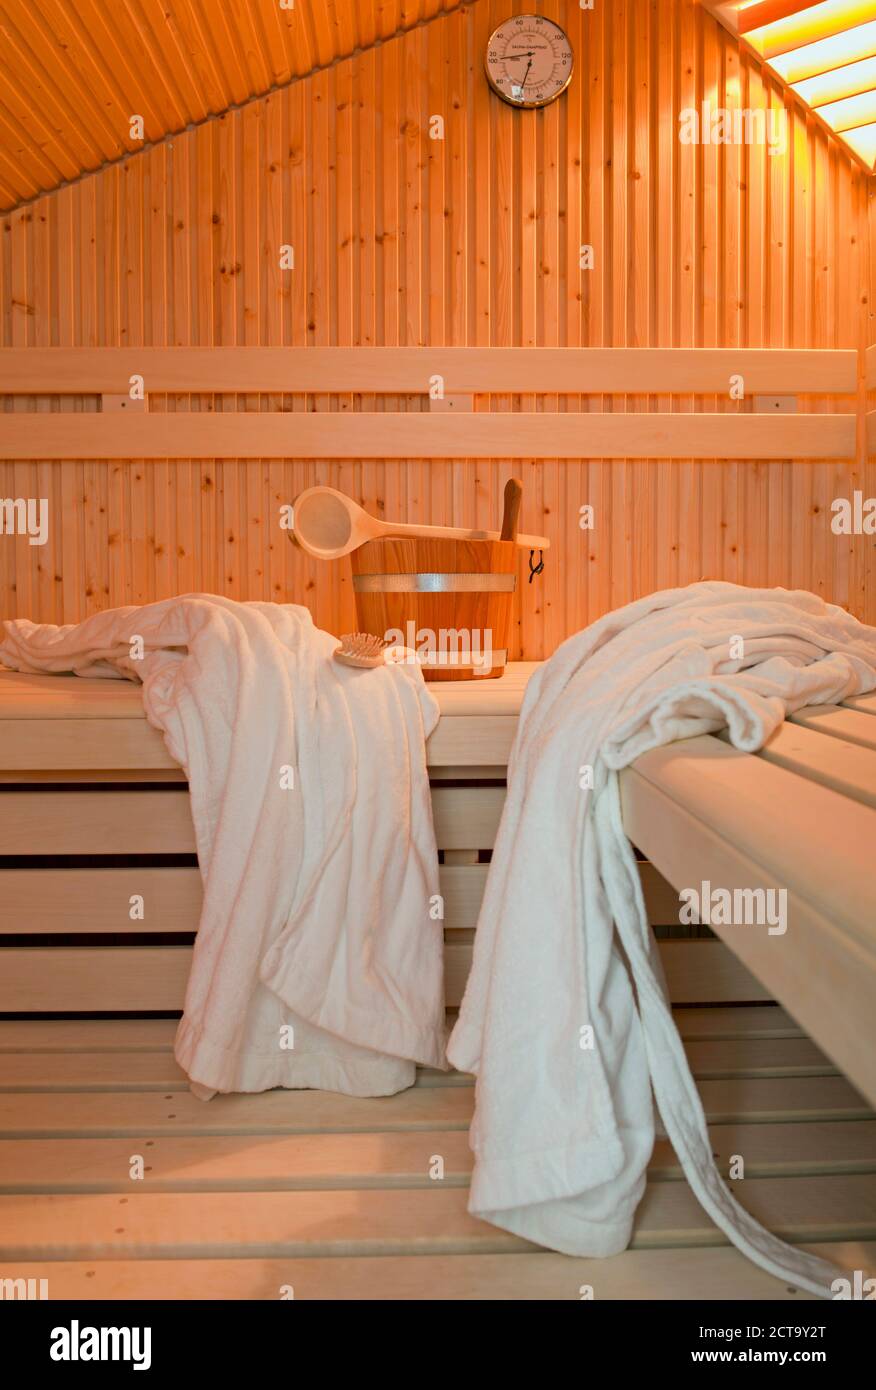 Alemania, Aquisgrán, sauna, bancos de madera, batas de baño, cepillo y bañera Foto de stock